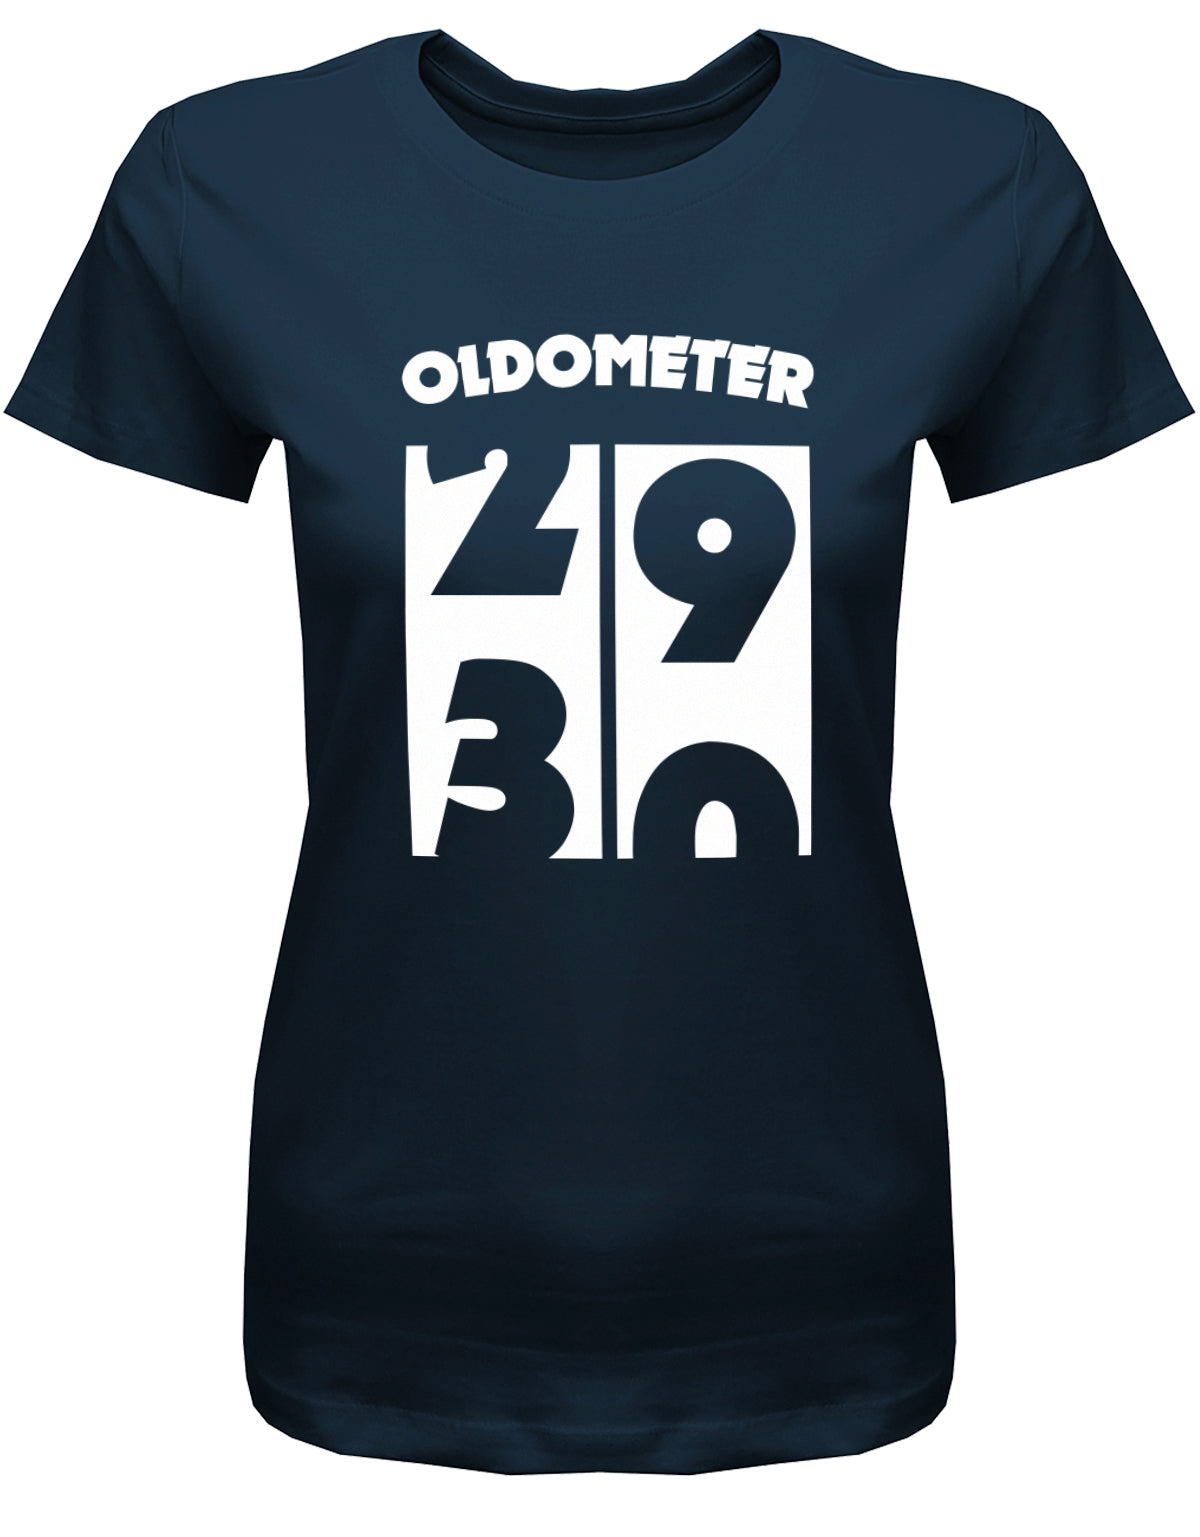 Lustiges T-Shirt zum 30. Geburtstag für die Frau Bedruckt mit Oldometer. Wechsel von 29 auf 30 Jahren. Navy